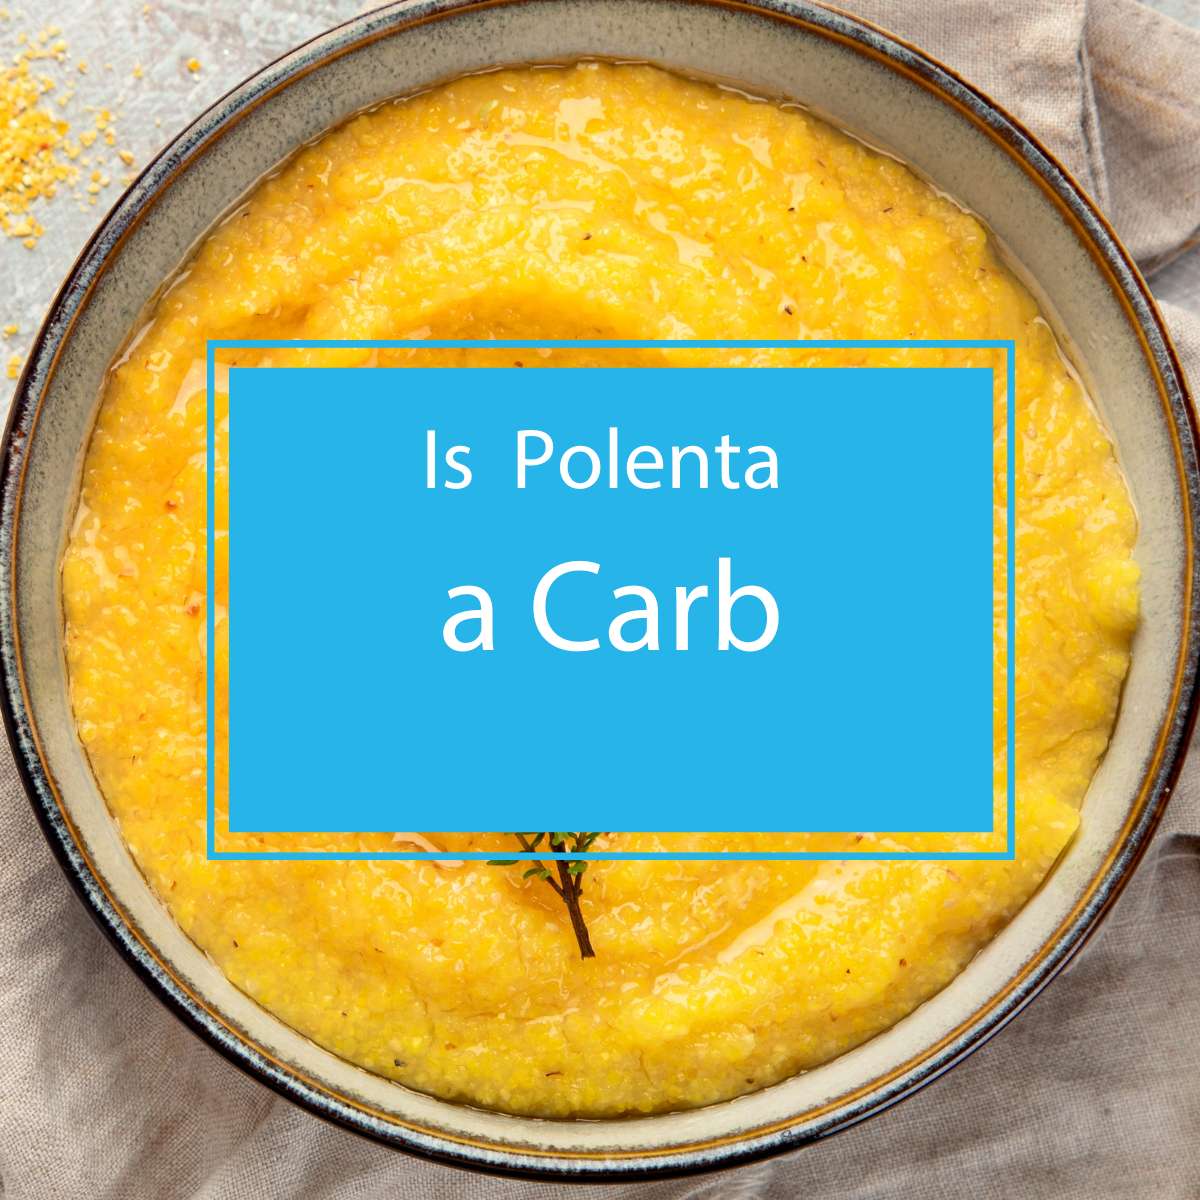 Is Polenta a Carb